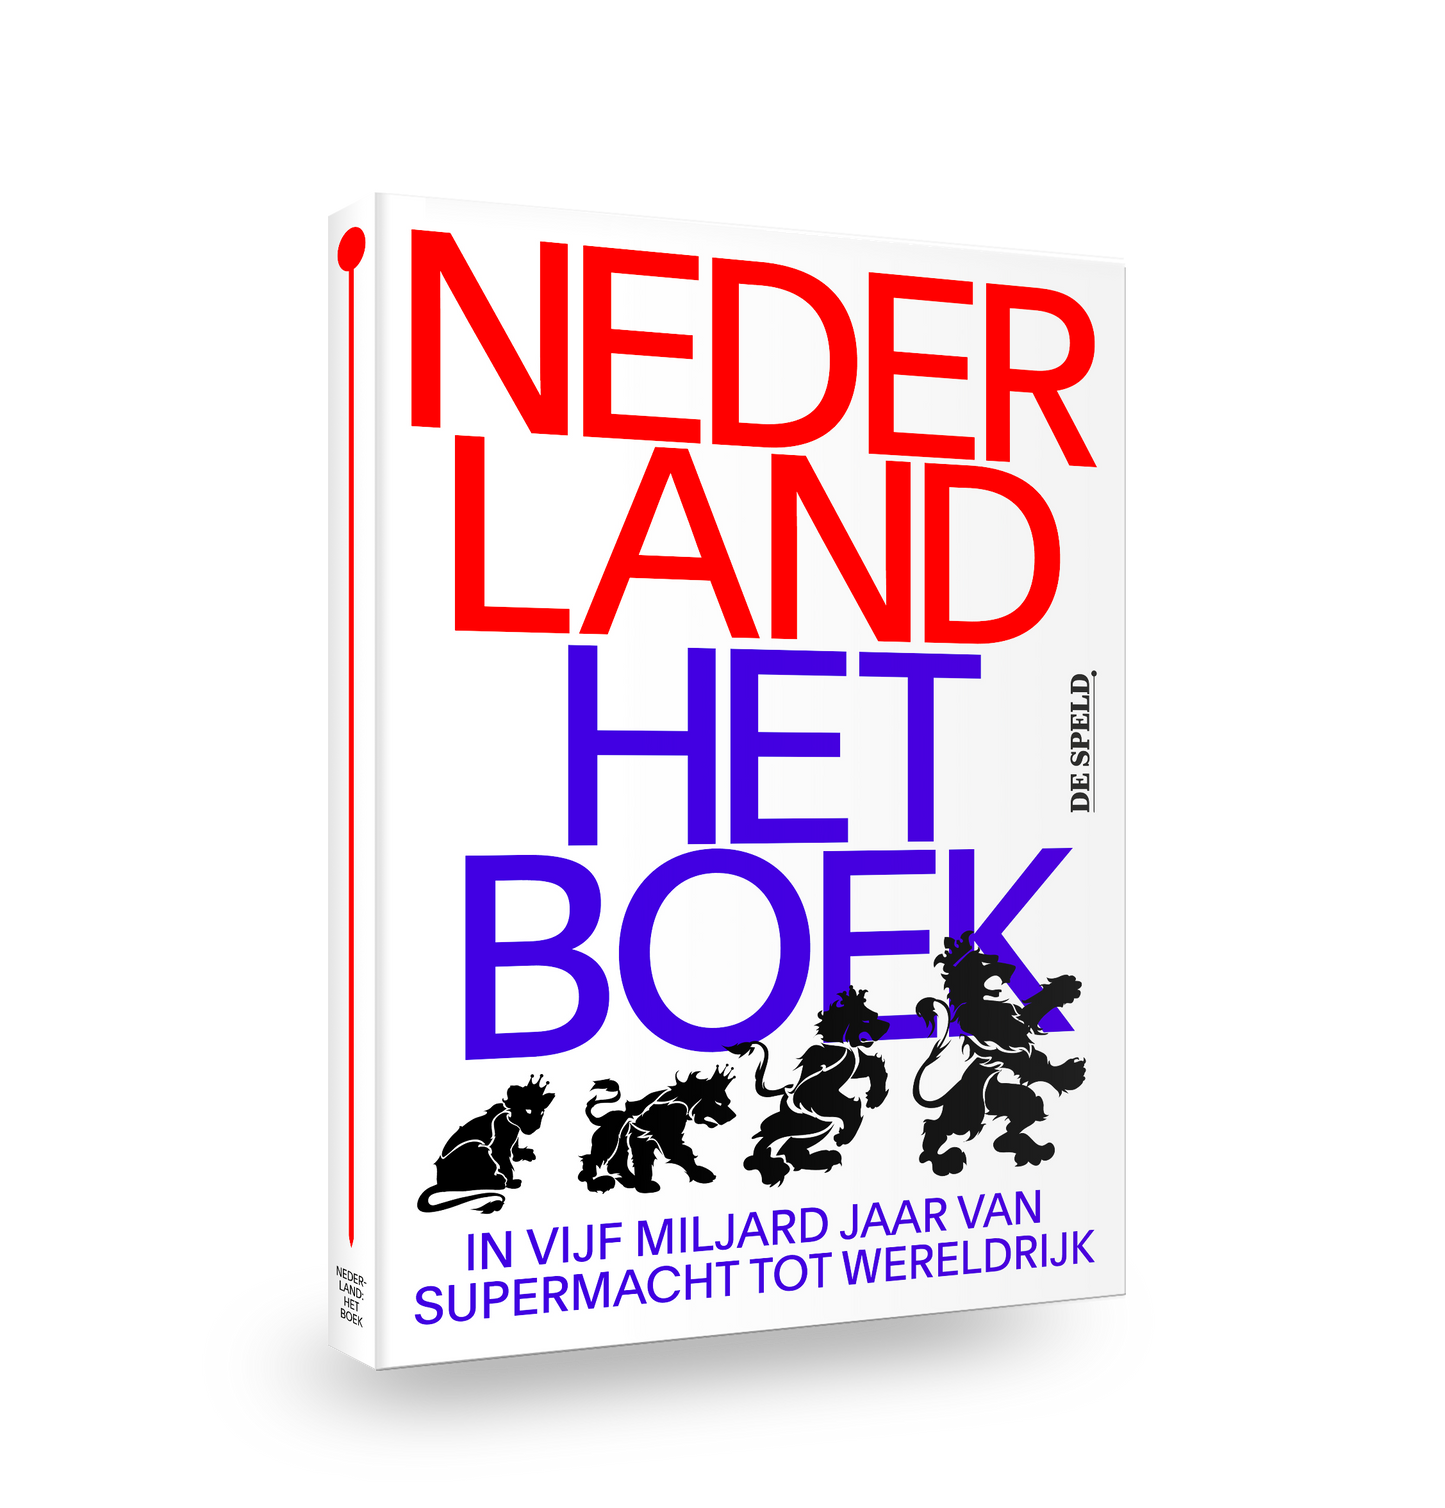 Nederland: Het Boek